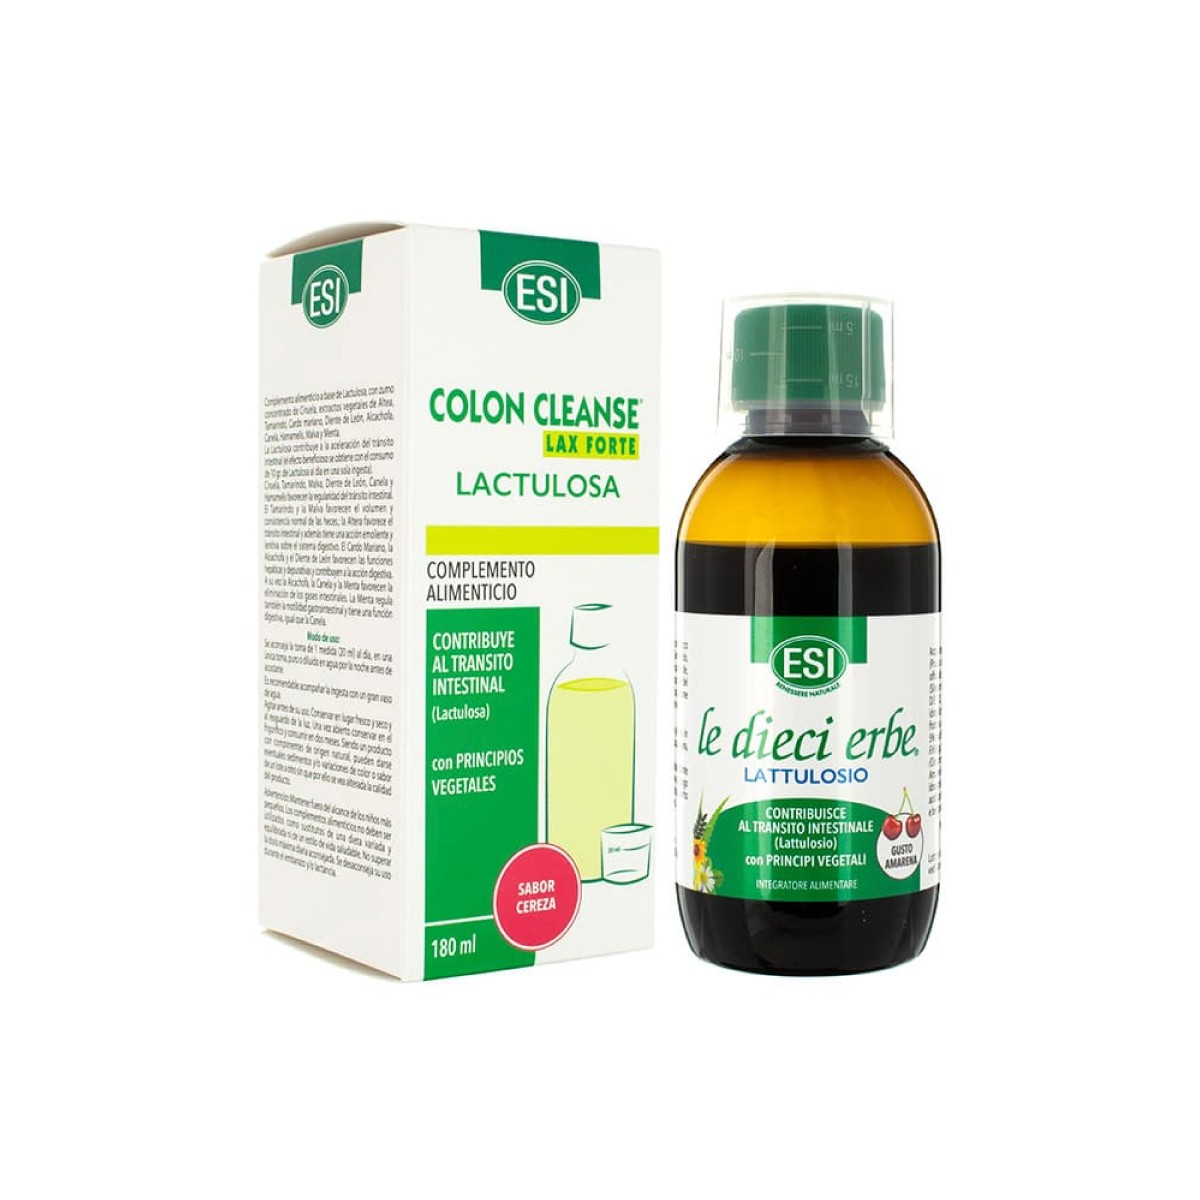 ESI Colon Cleanse Lax Forte Lactulosa, 180 ml